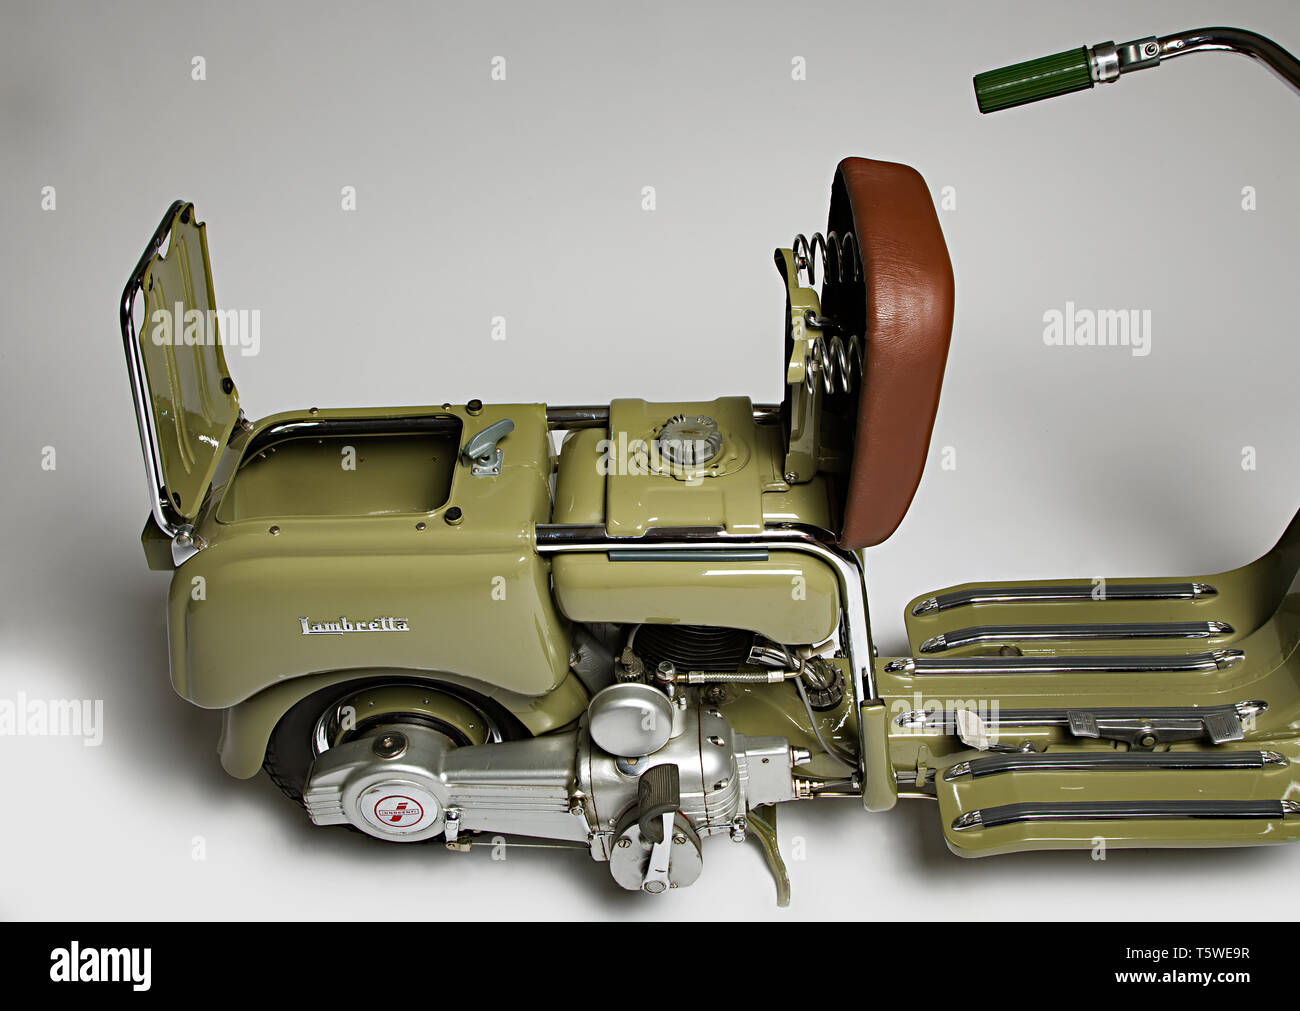 Moto d'Epoca Lambretta 125 m (A). Scooter. Marca: modello Innocenti Lambretta: 125 m (A) nazione: Italia - Milano anno: 1947 condizioni: Foto de stock